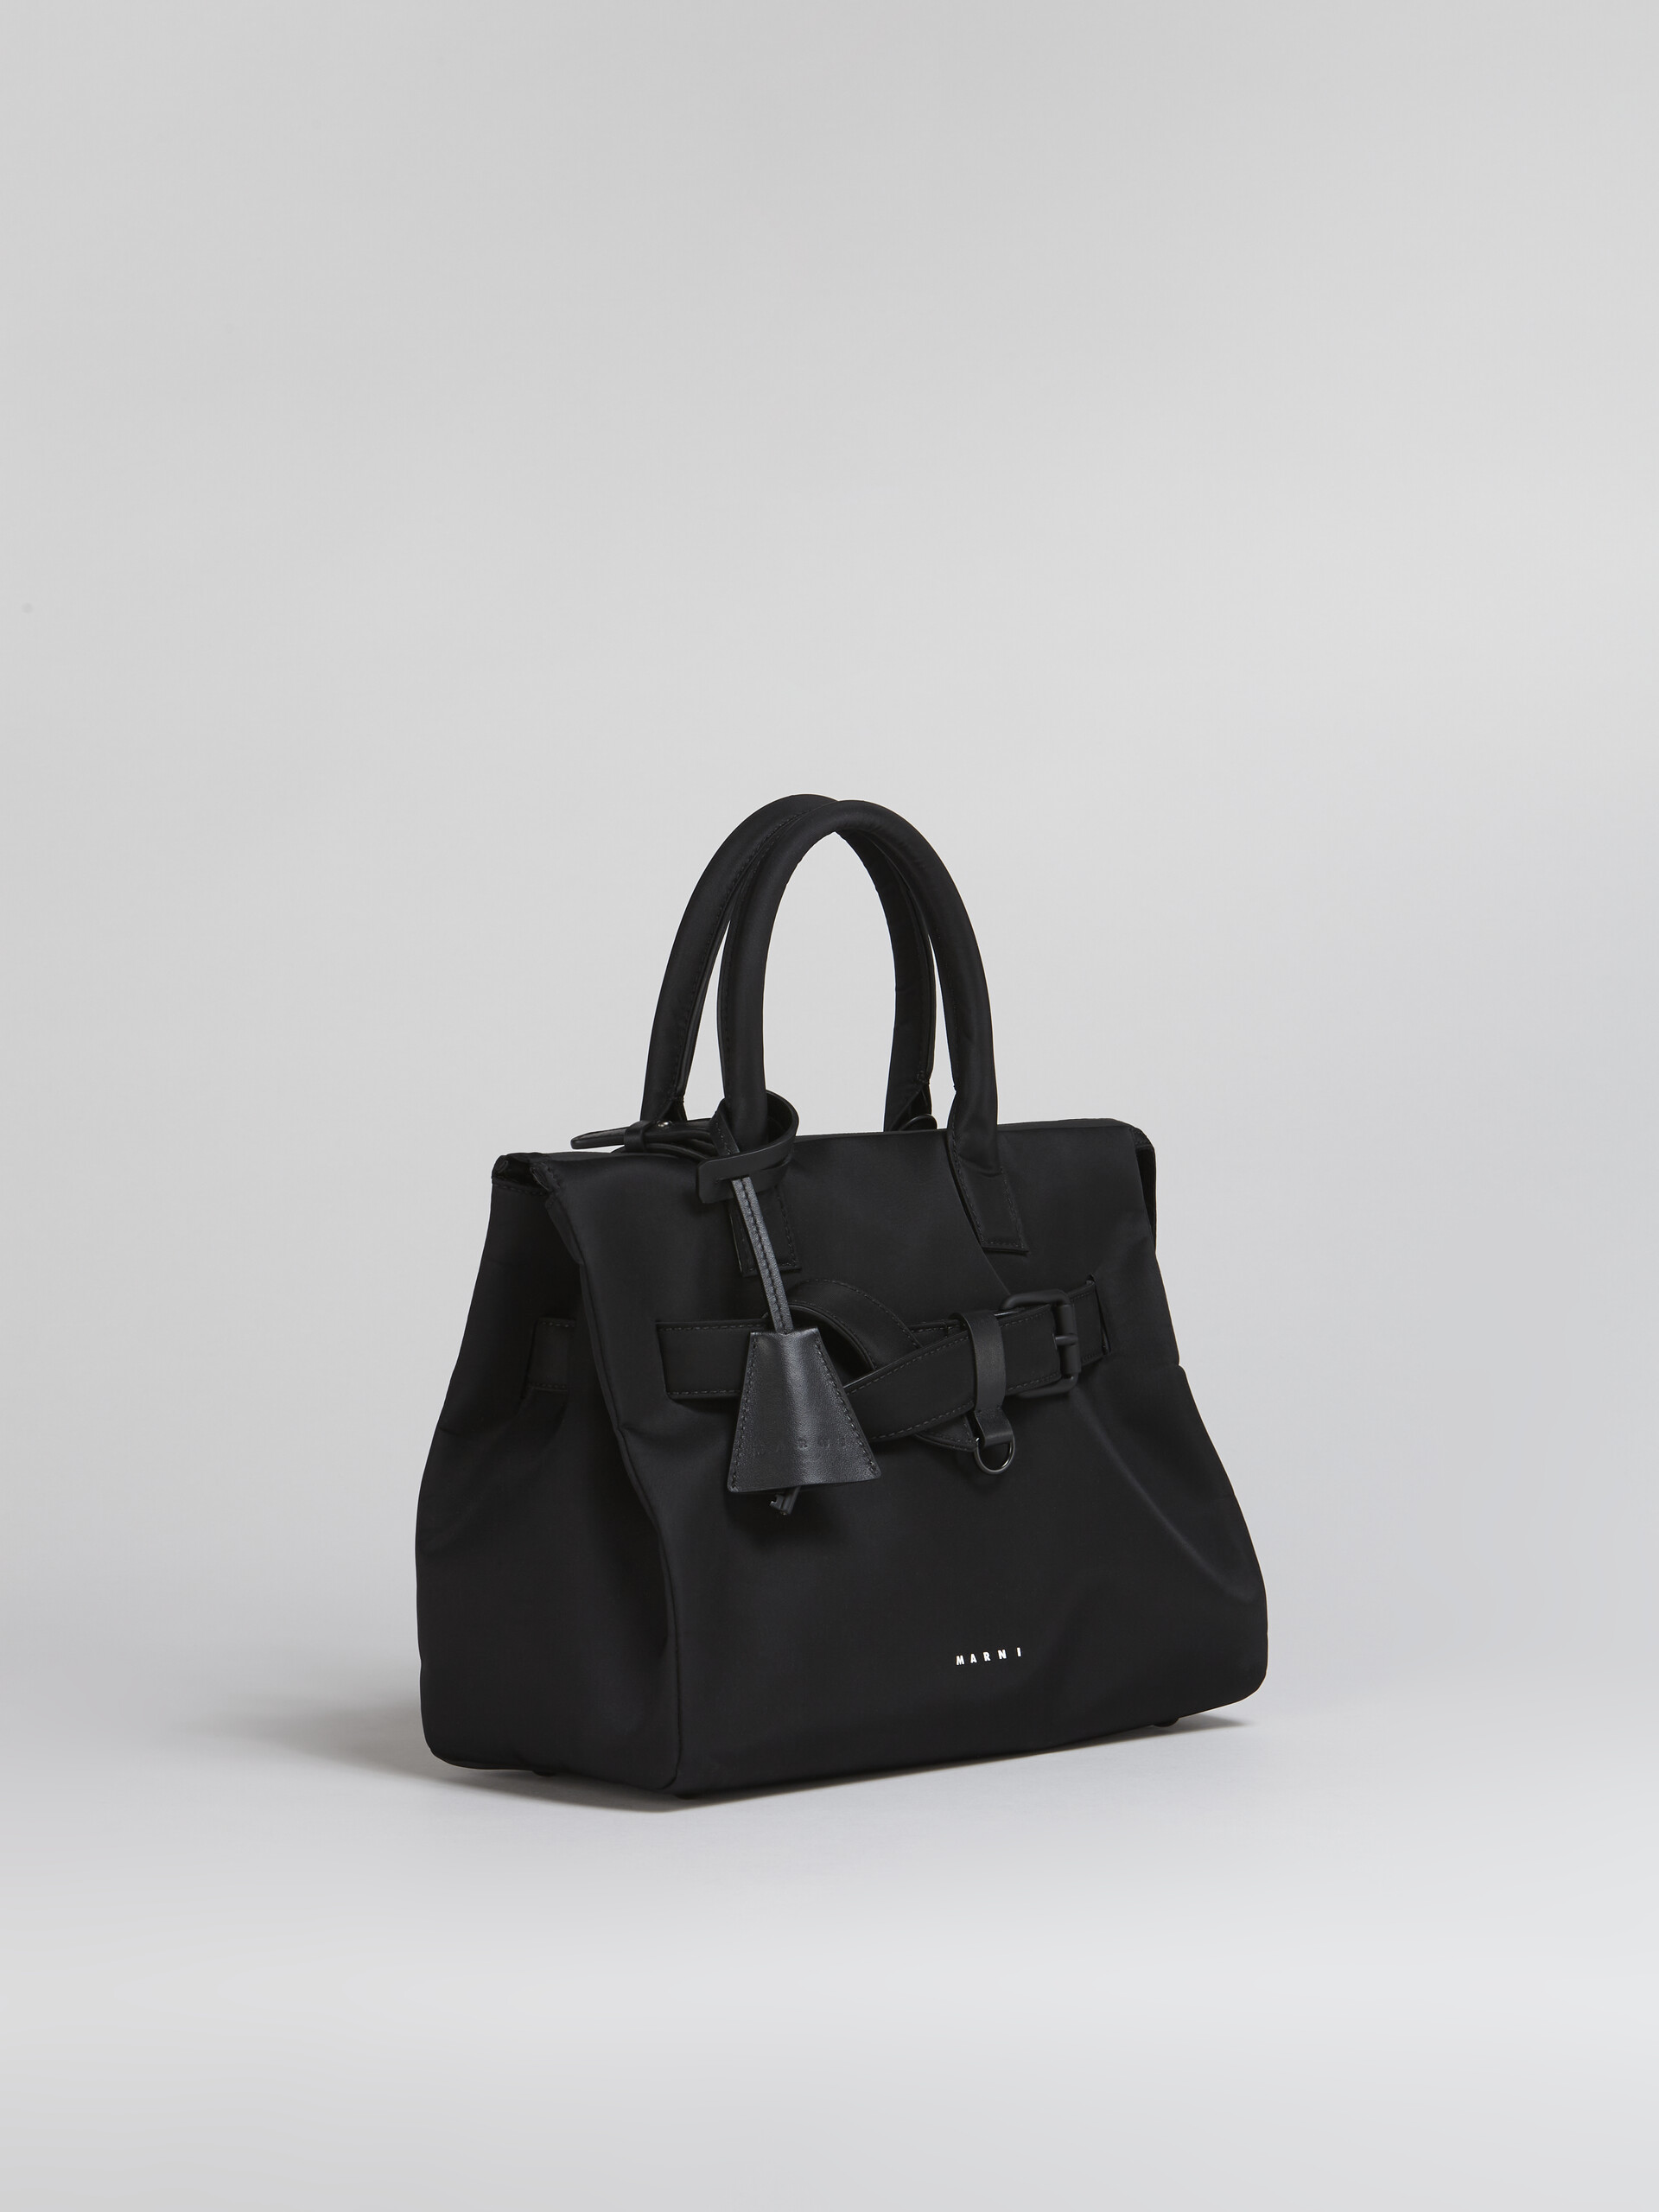 Black nylon TREASURE bag - Handbag - Image 6